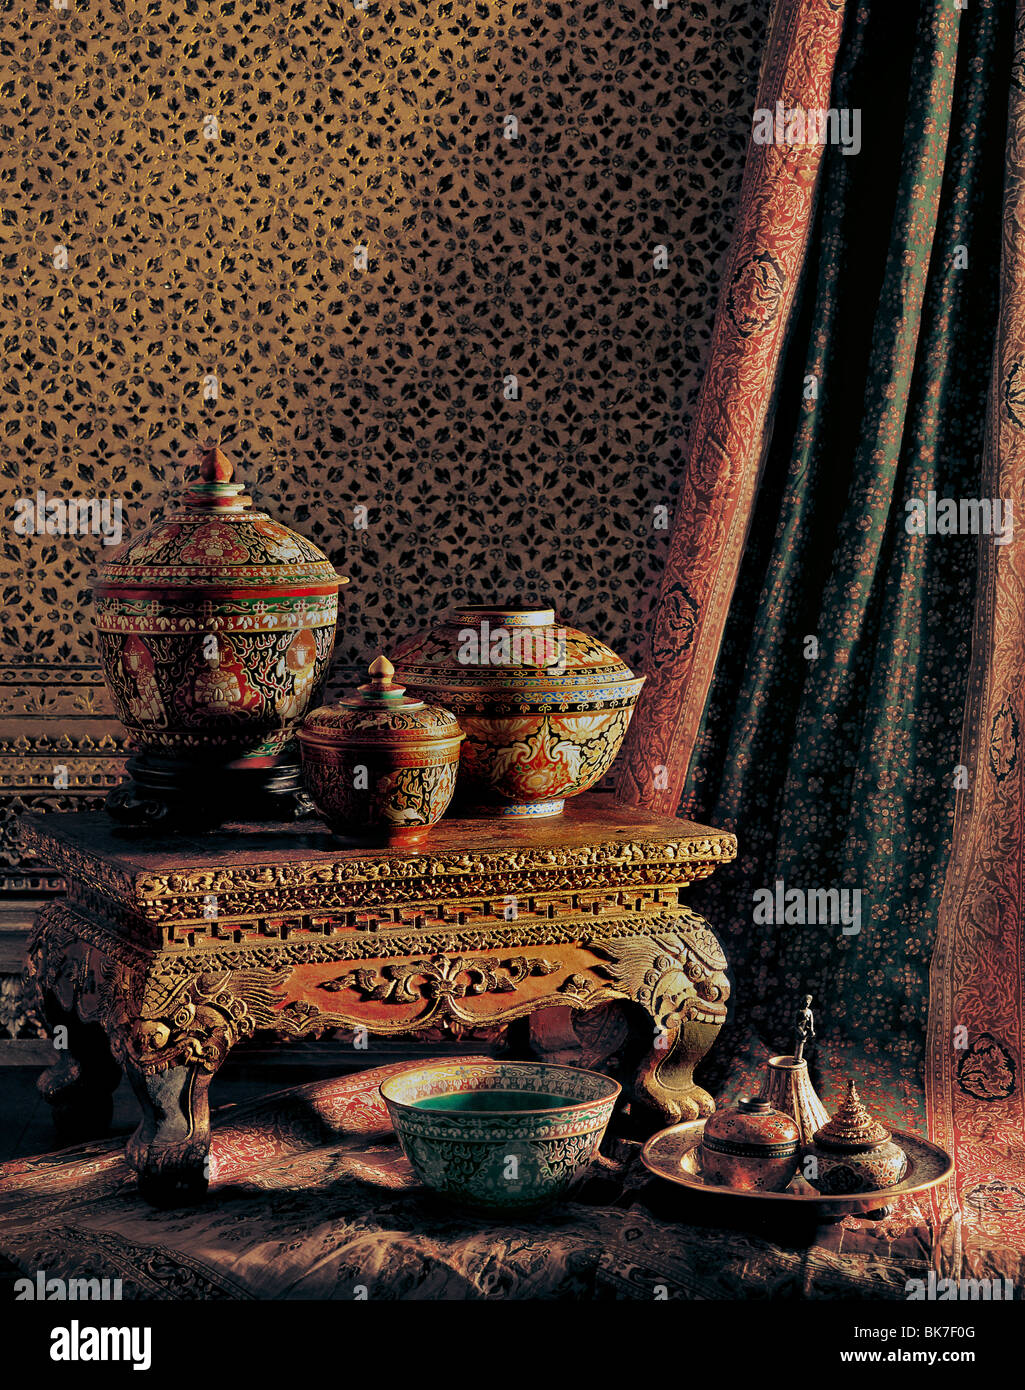 Bencharong marchandises de la période d'Ayutthaya thaïlandais classique, meubles et textiles, Prasat Museum, Bangkok, Thaïlande Banque D'Images